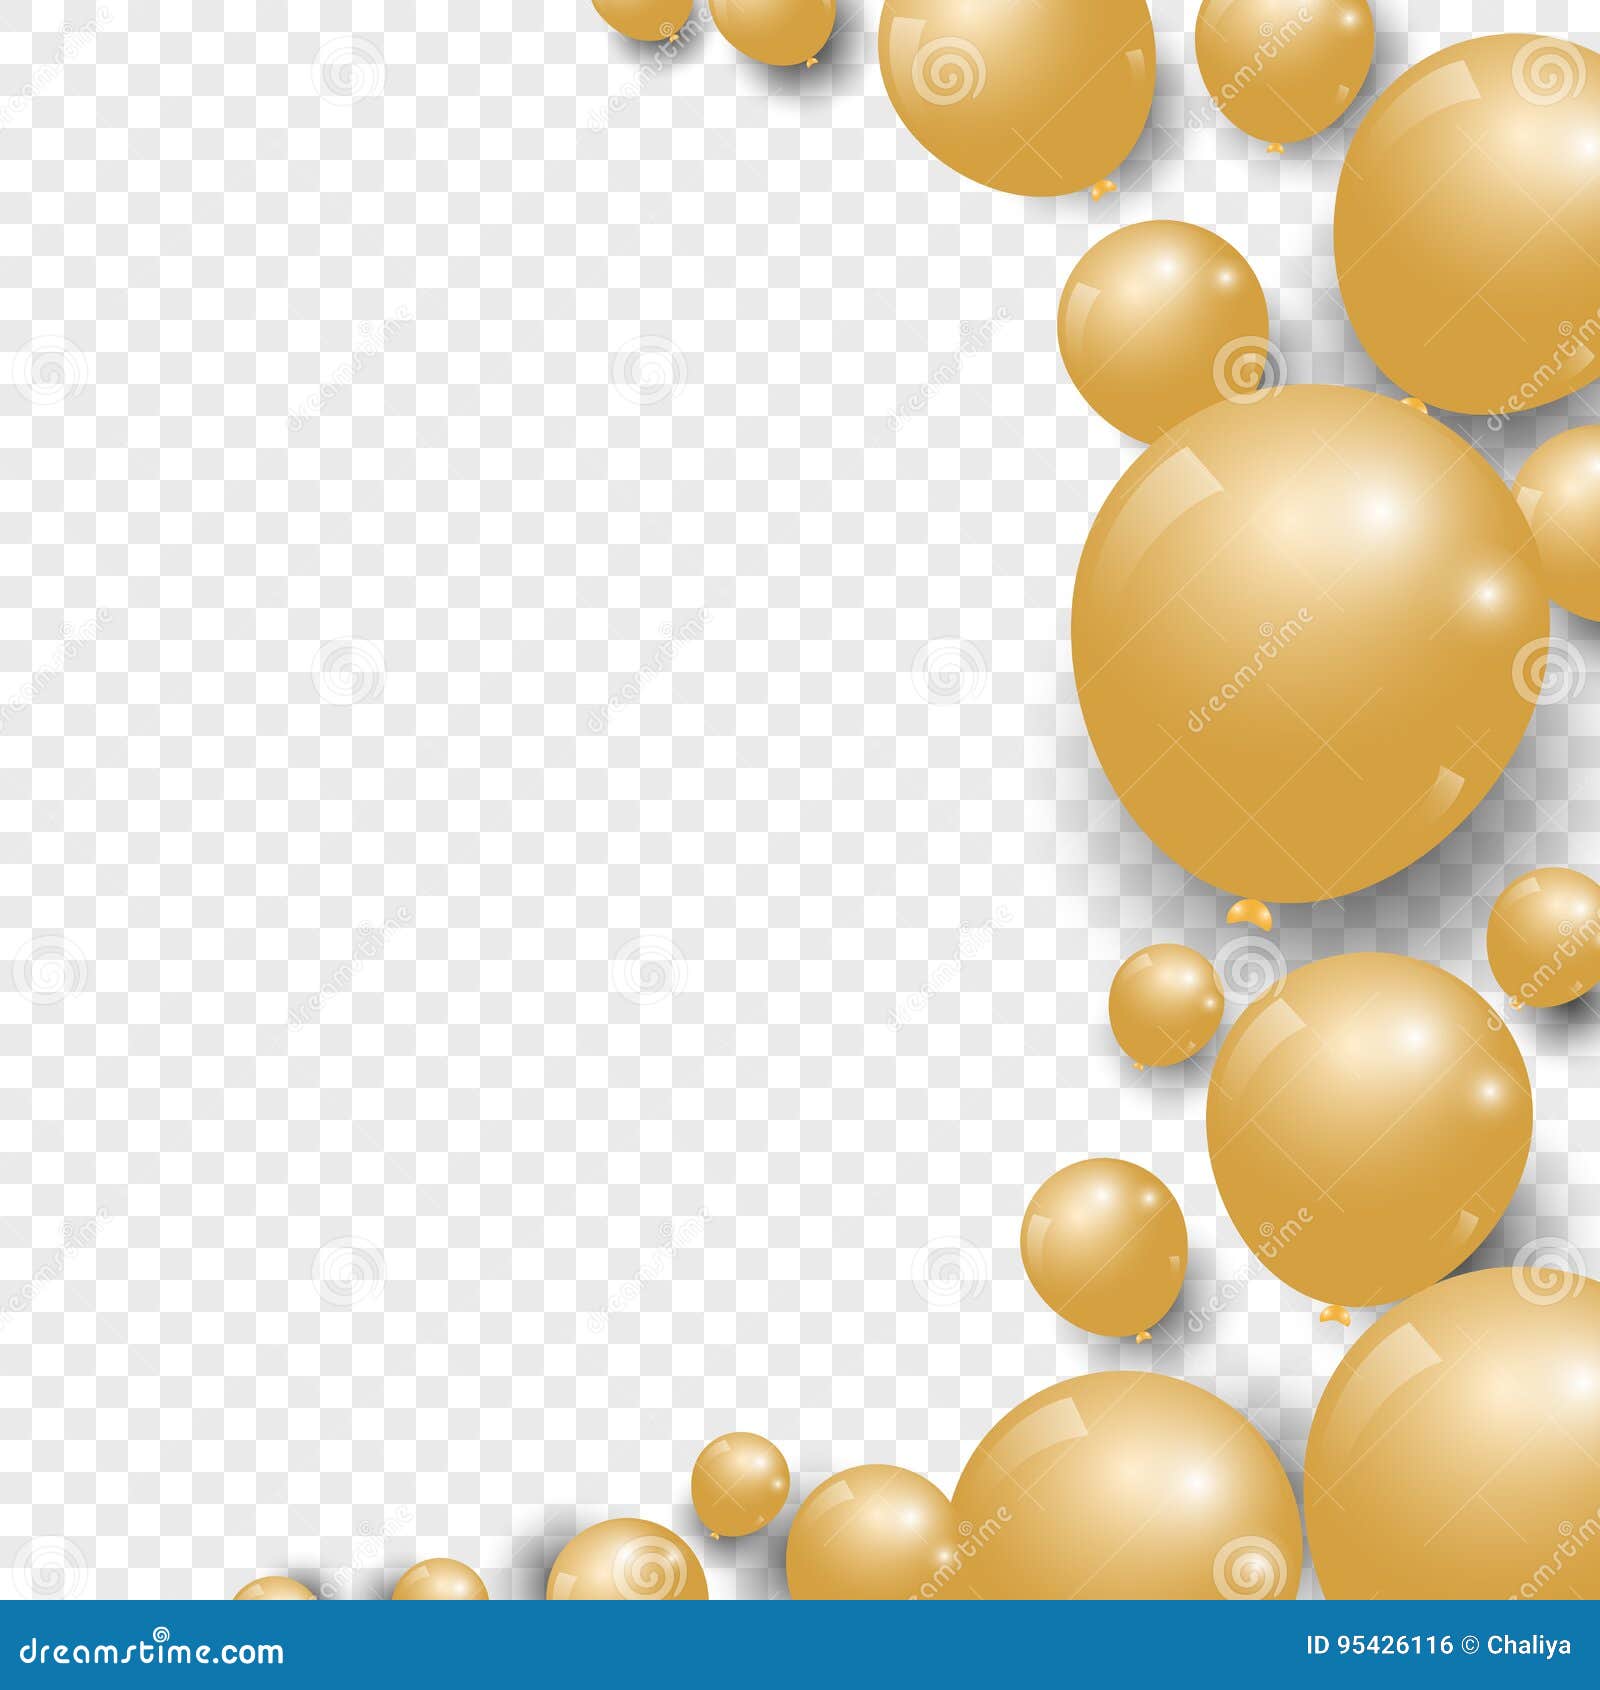 Ballon Transparent D'or Sur Fond. Ballons De Fête Givré Pour La